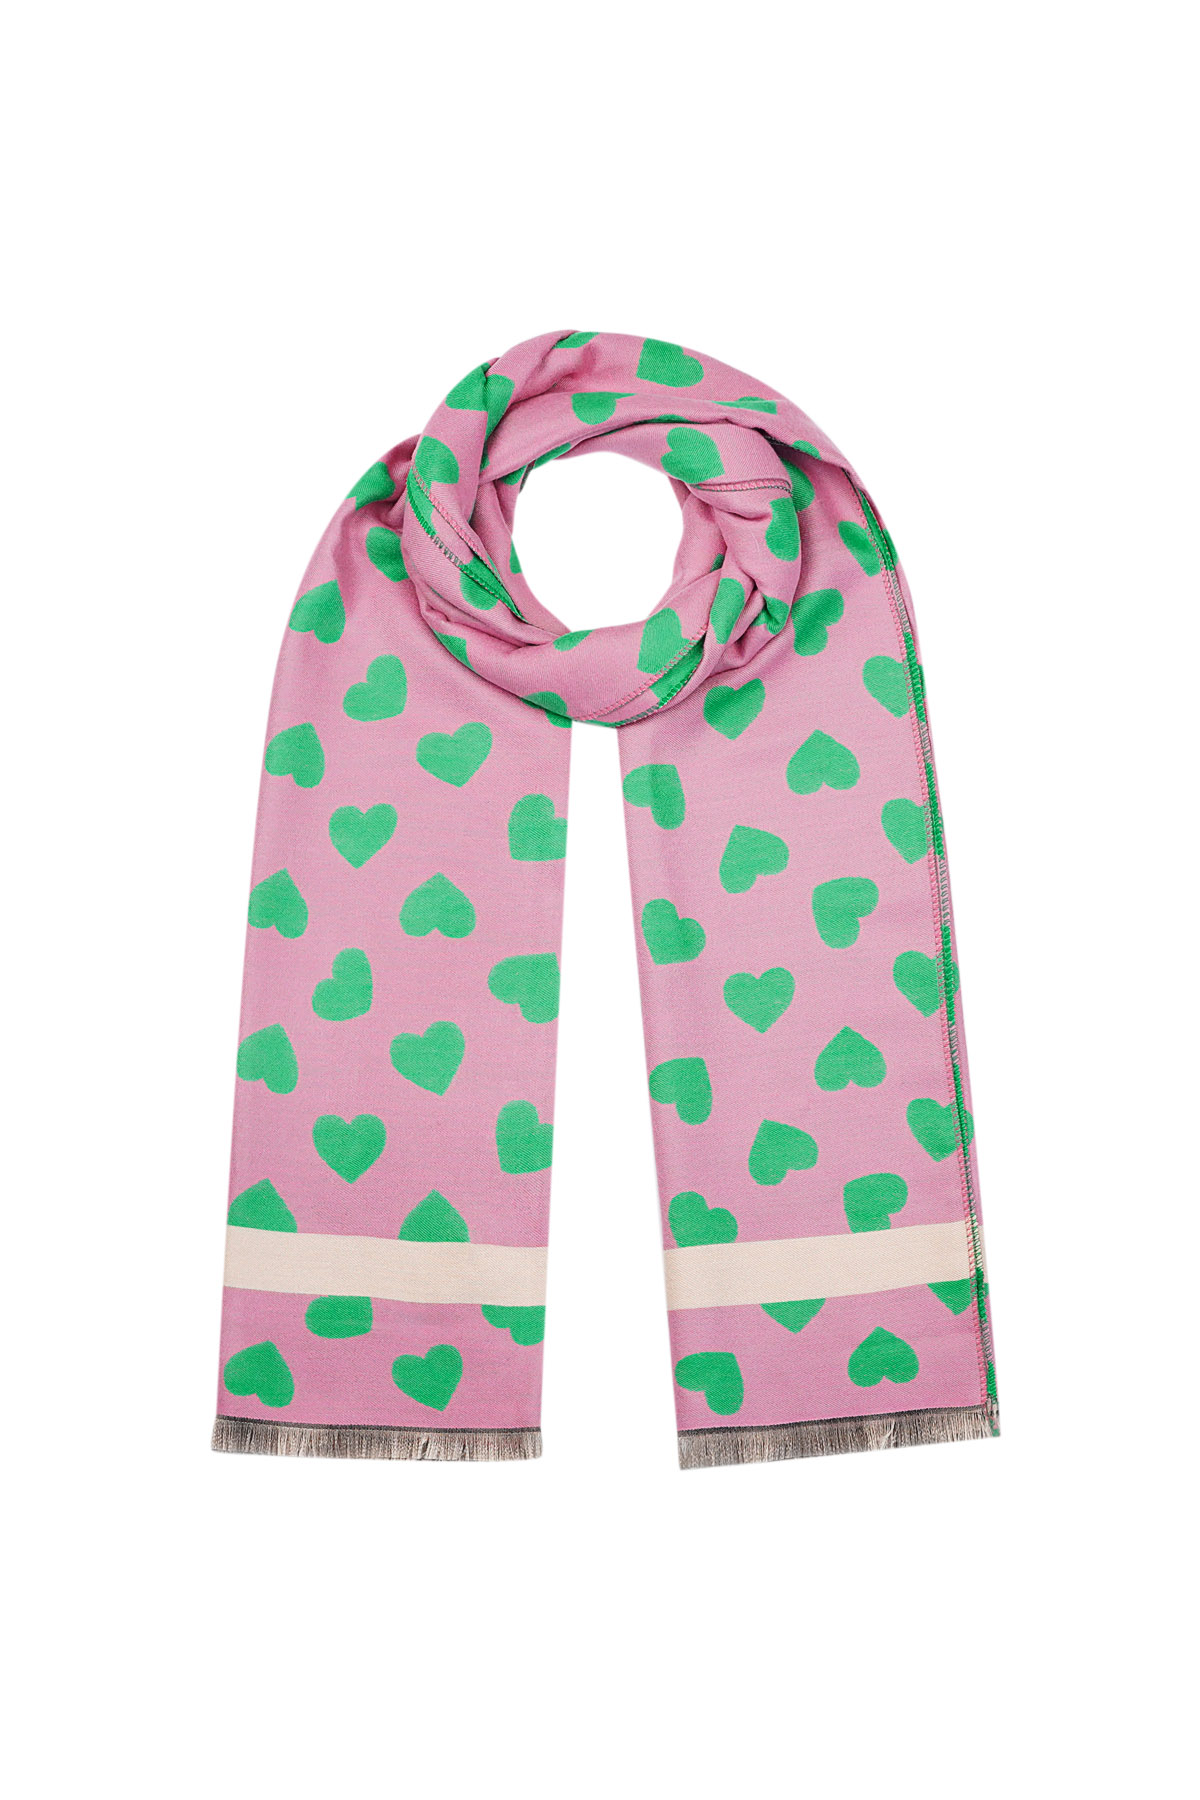 Happy hartjes sjaal - roze/ groen